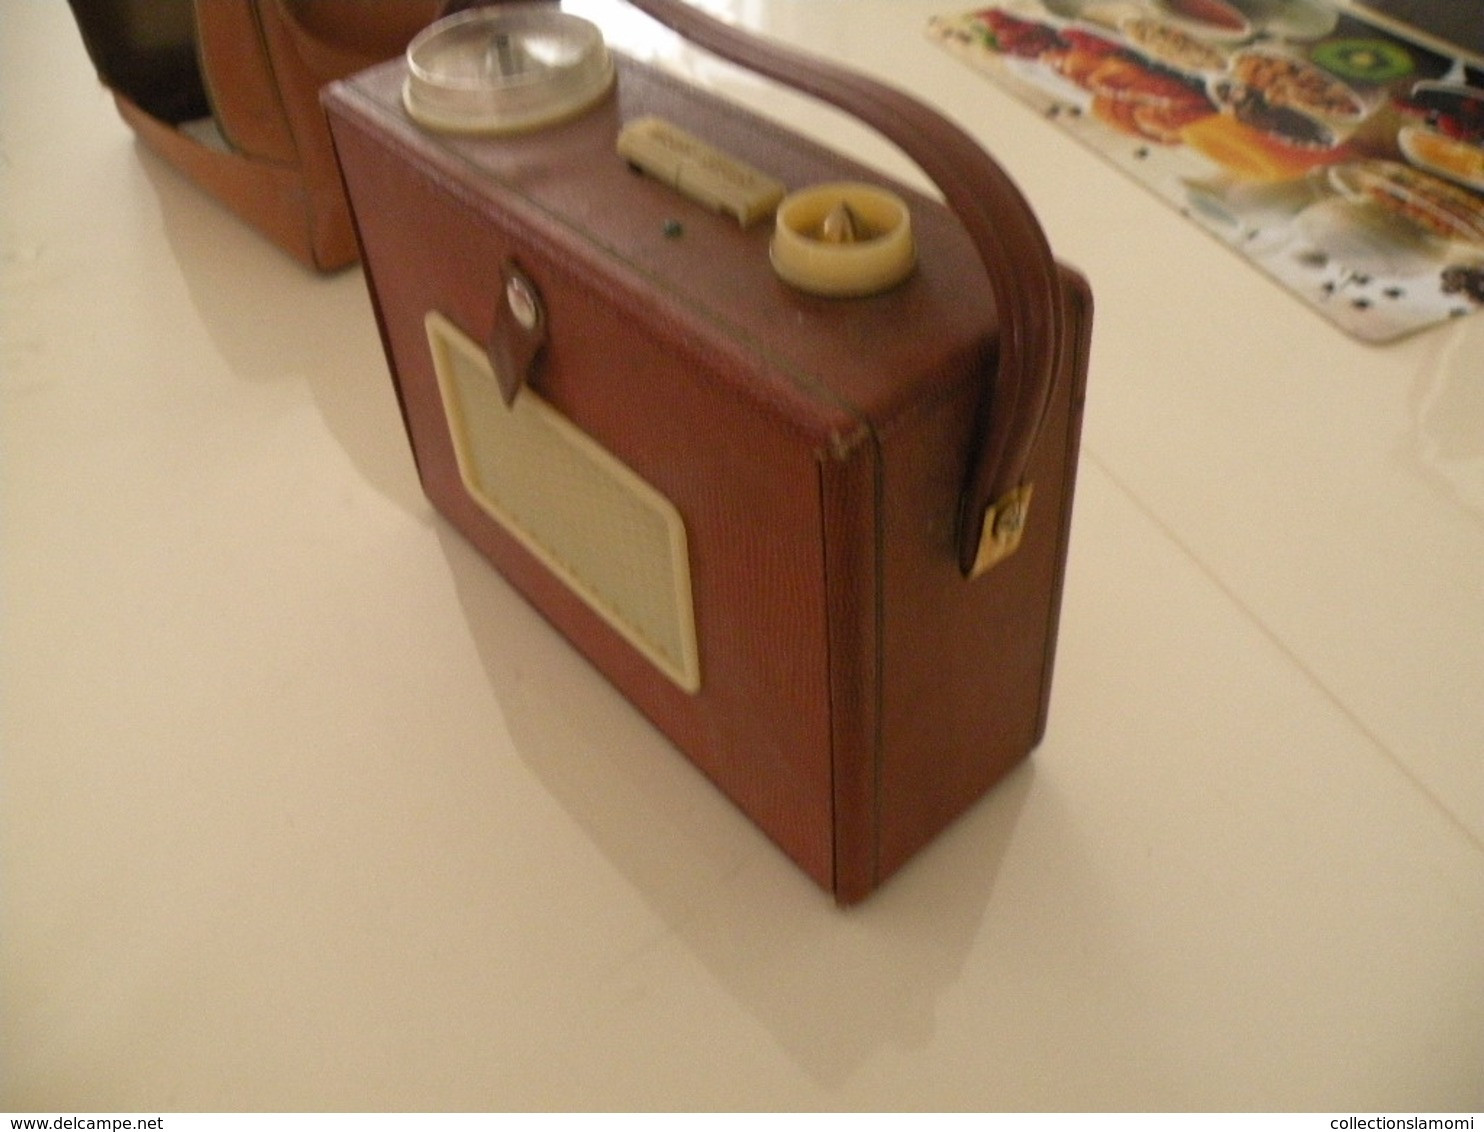 Ancienne radio Transistor Seven (Pizon Bros) en état de fonction (0,28cm x 0,11 cm h 0,21) avec son étui en cuir